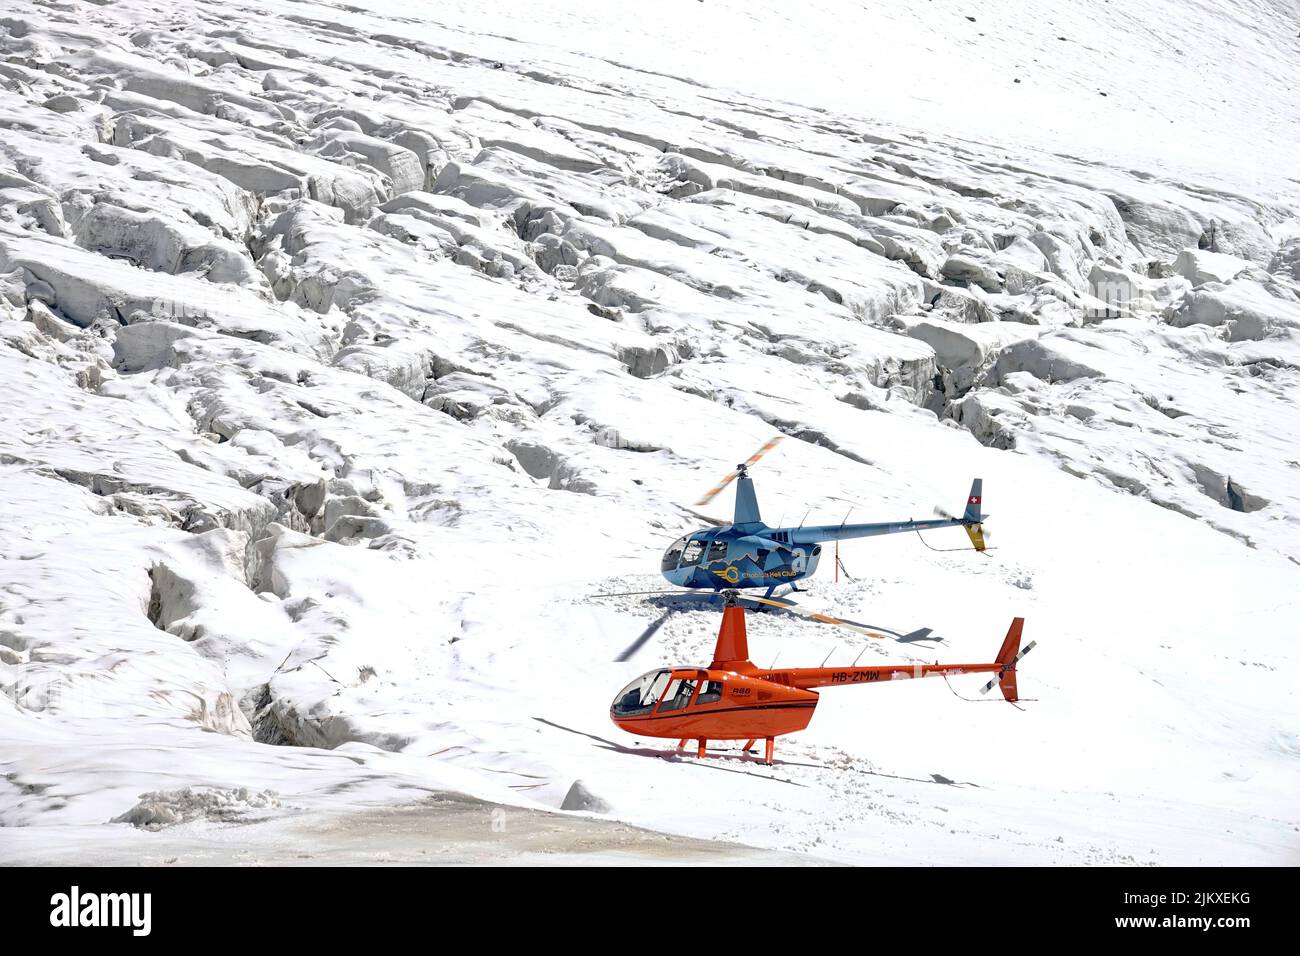 Vol en hélicoptère dans les Alpes suisses. Zermatt, Suisse - août 2022 Banque D'Images